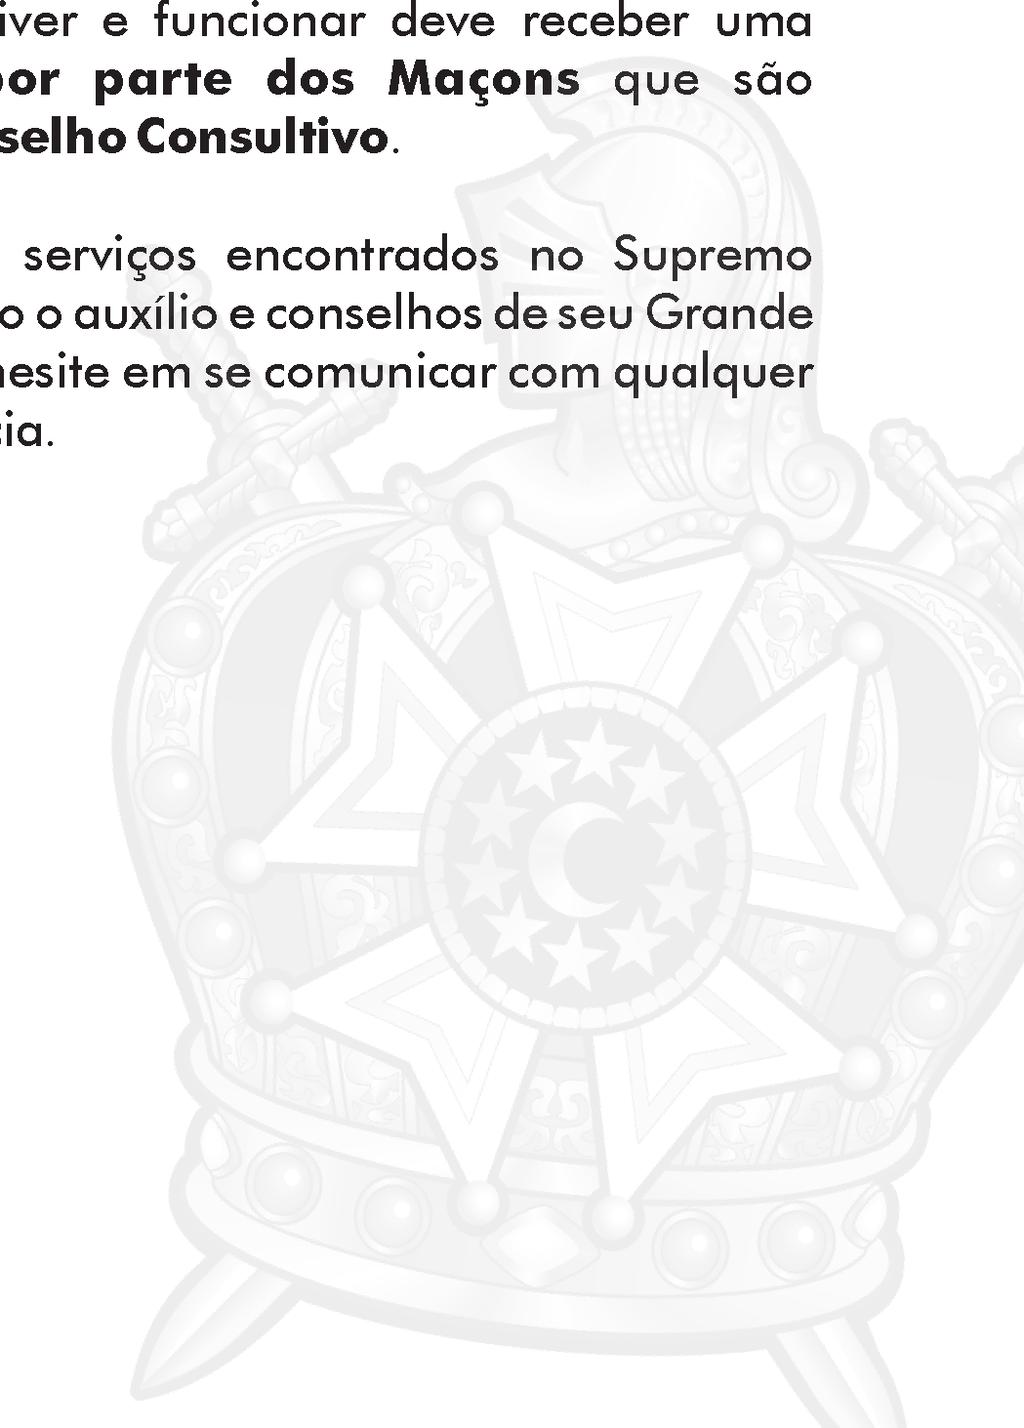 TAXAS DE INICIAÇÃO, INICIAÇÃO AO GRAU DEMOLAY E CAPITAÇÃO ANUAL (CID Carteira de Identidade DeMolay) - A Comissão de Treinamentos do Supremo Conselho da Ordem DeMolay para o Brasil aconselha que